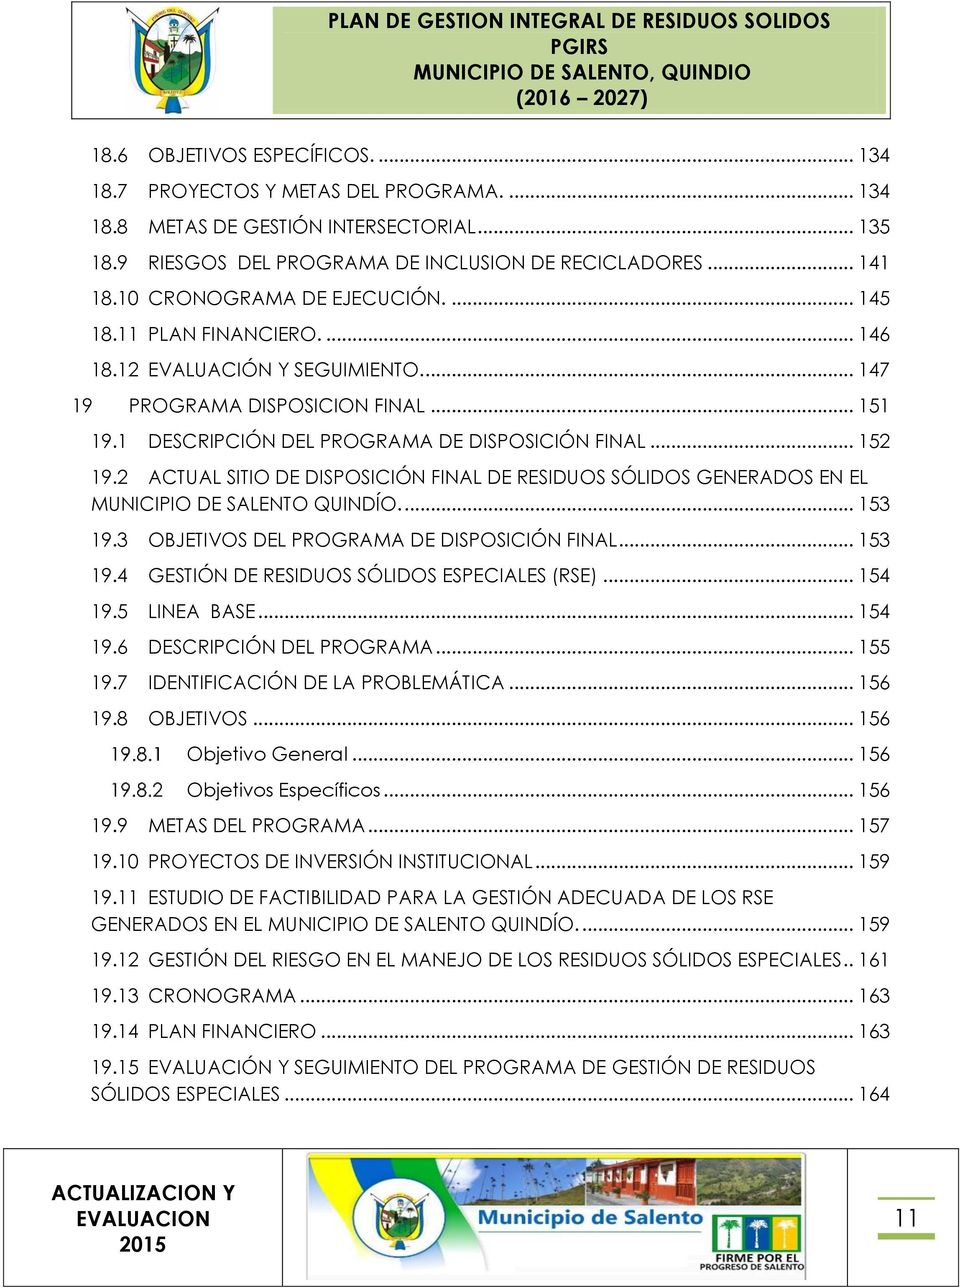 2 ACTUAL SITIO DE DISPOSICIÓN FINAL DE RESIDUOS SÓLIDOS GENERADOS EN EL MUNICIPIO DE SALENTO QUINDÍO.... 153 19.3 OBJETIVOS DEL PROGRAMA DE DISPOSICIÓN FINAL... 153 19.4 GESTIÓN DE RESIDUOS SÓLIDOS ESPECIALES (RSE).